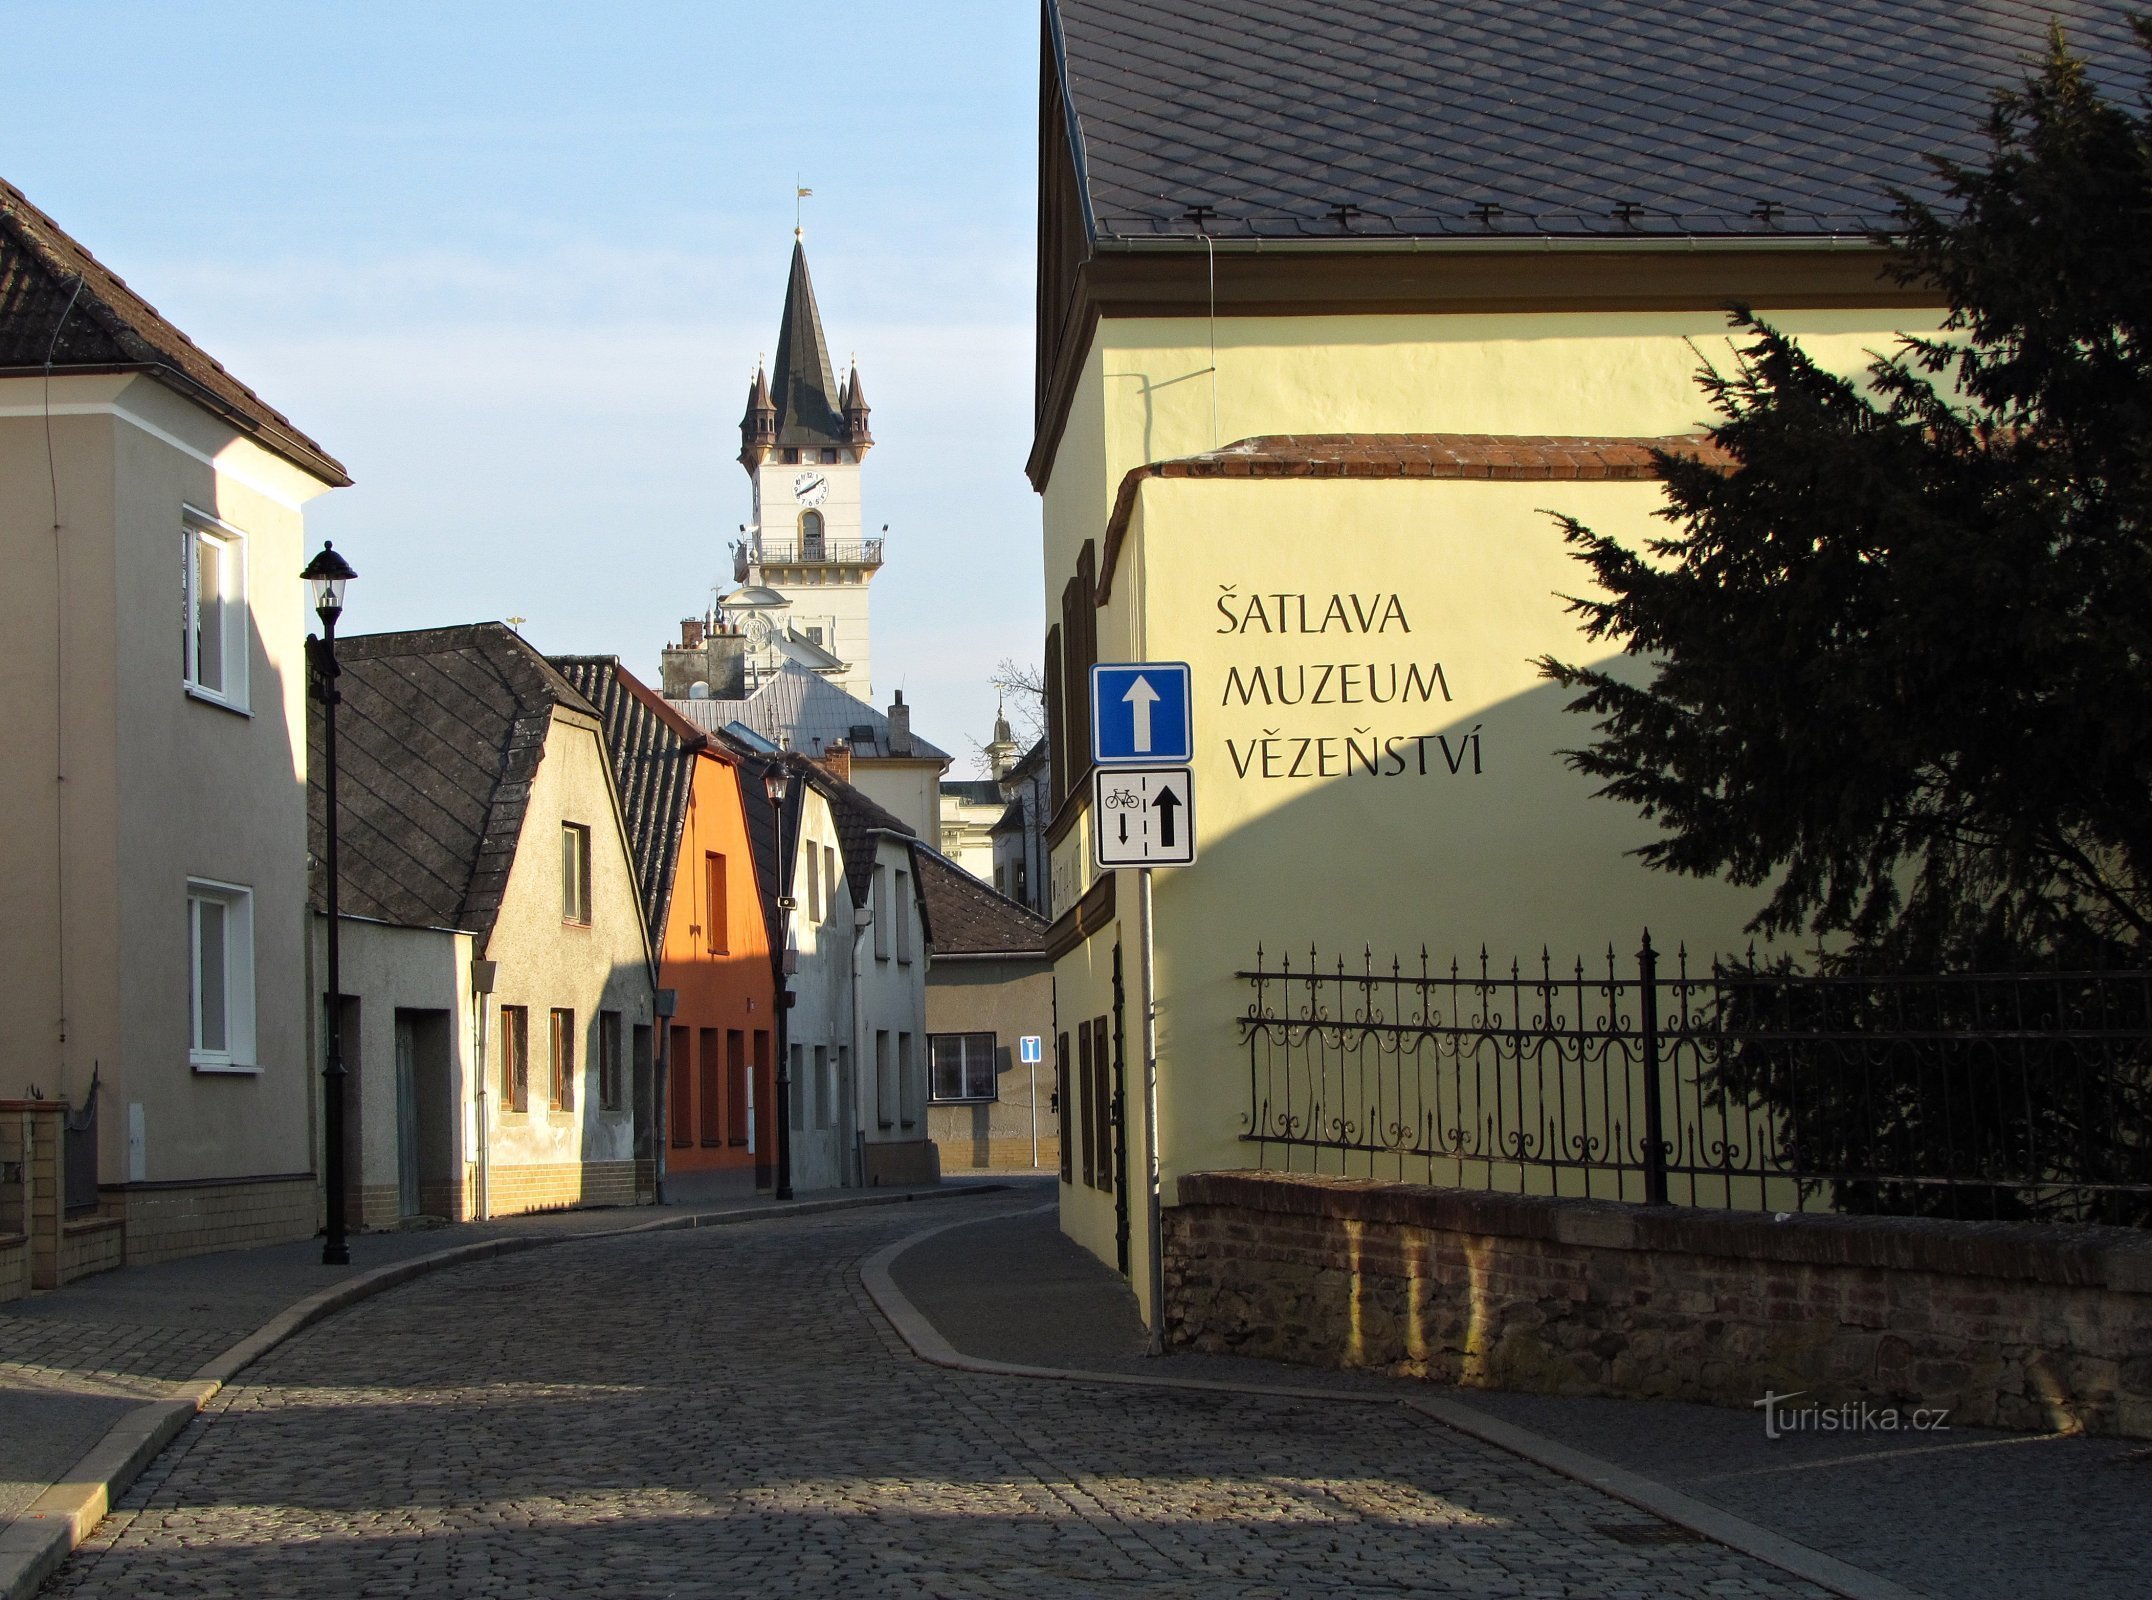 Uničovská muzea - Šatlava, muzeum vězeňství